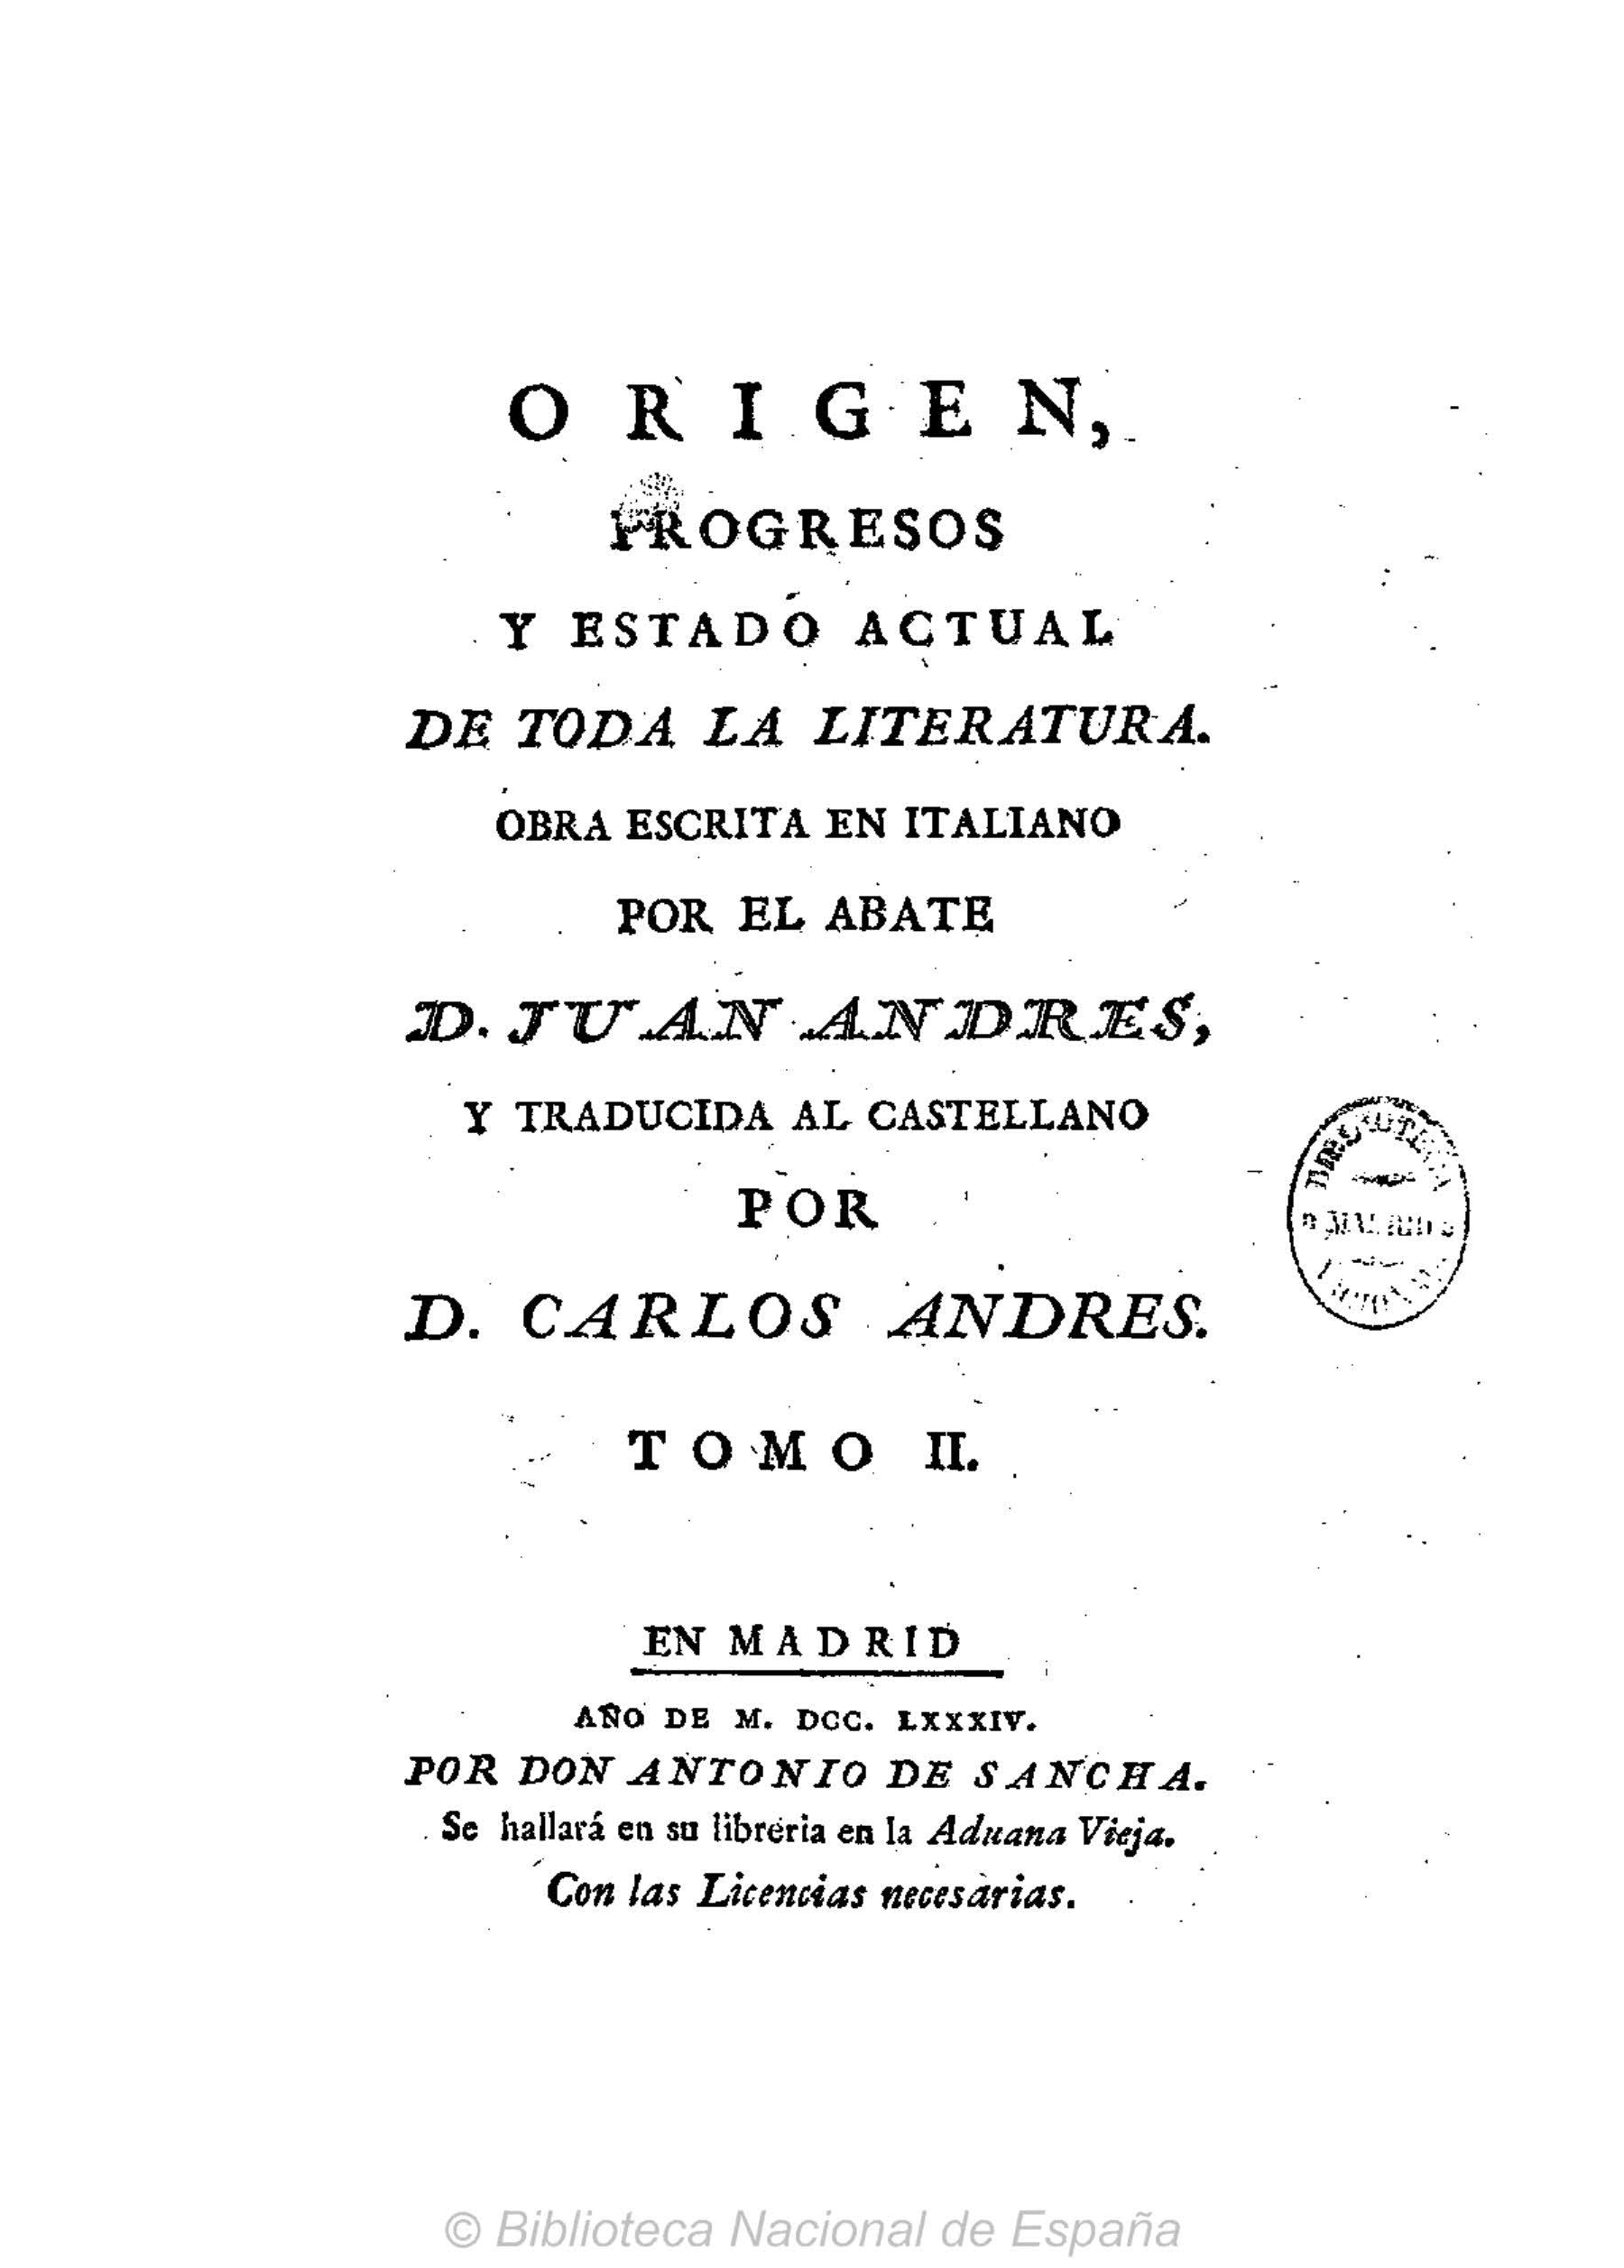 Origen, progresos y estado actual de toda la literatura, Tomo II